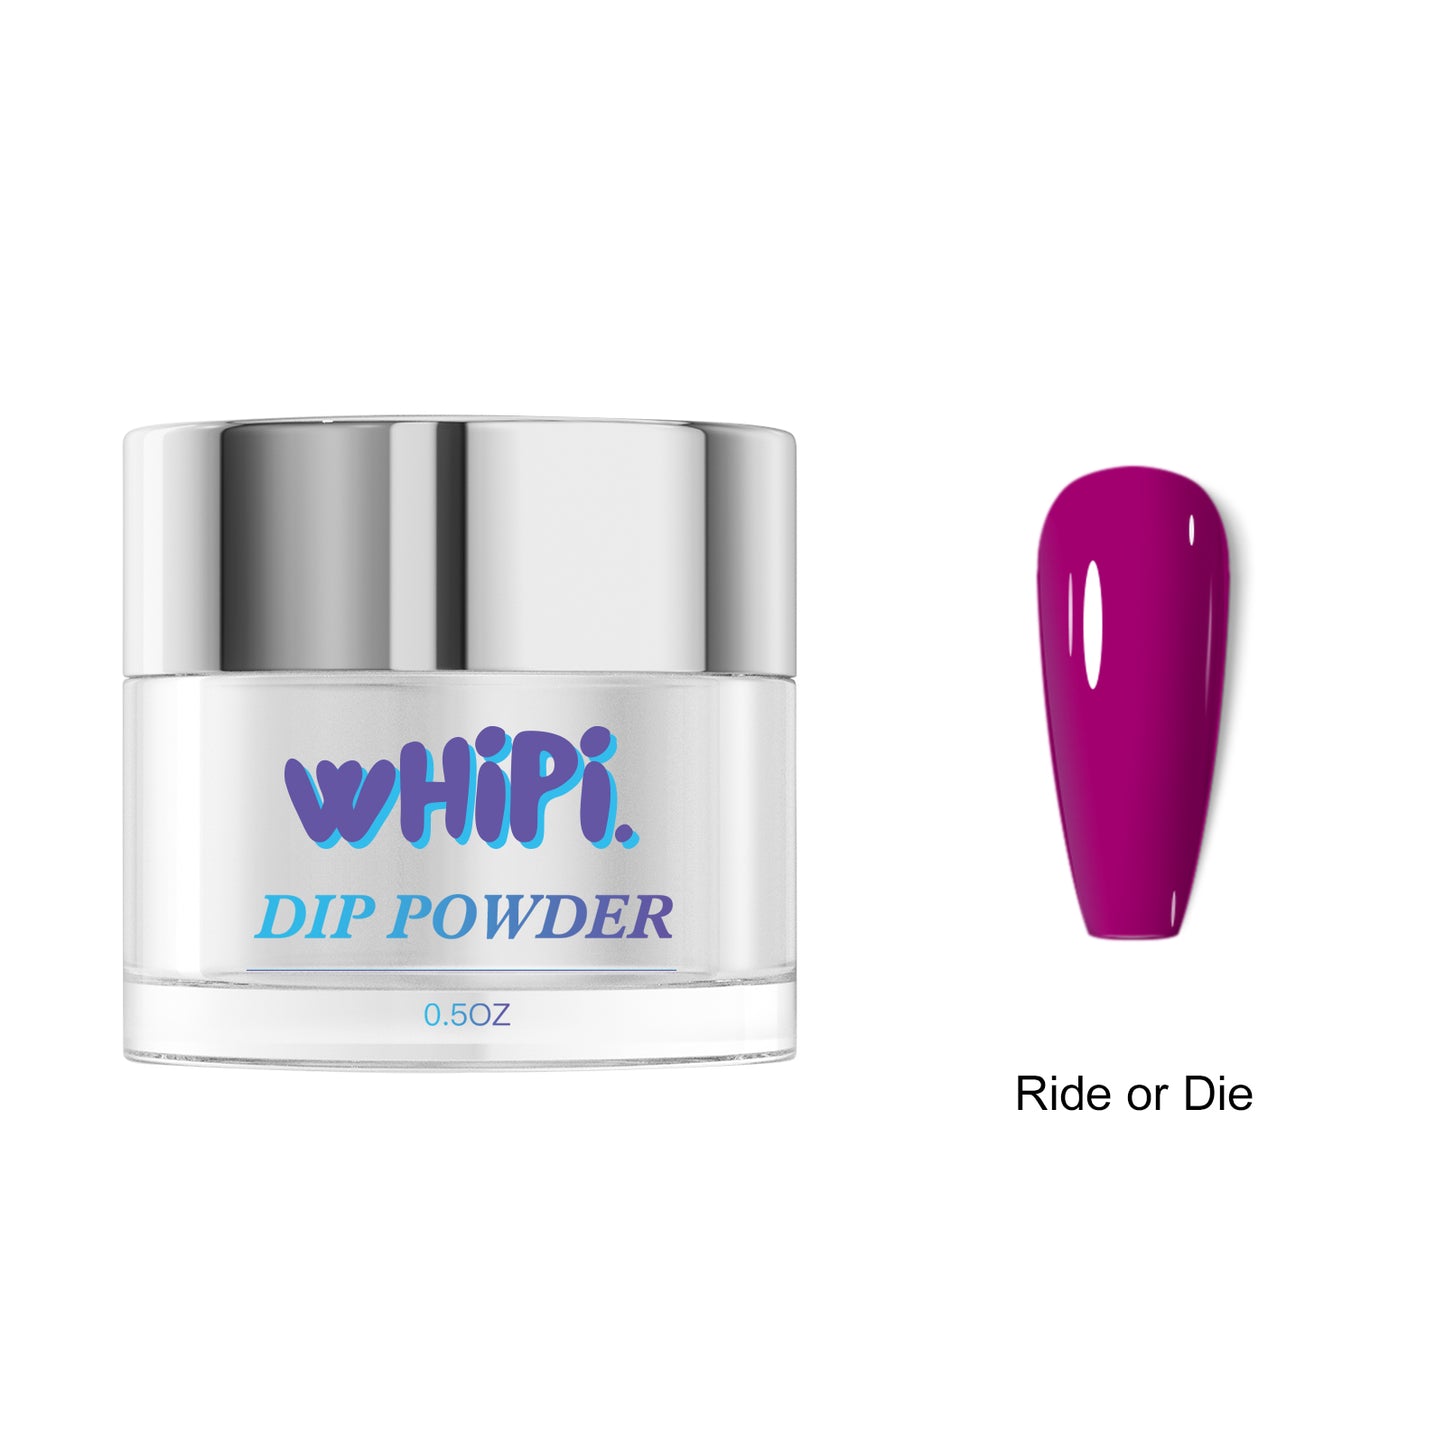 Ride or Die Dip Powder